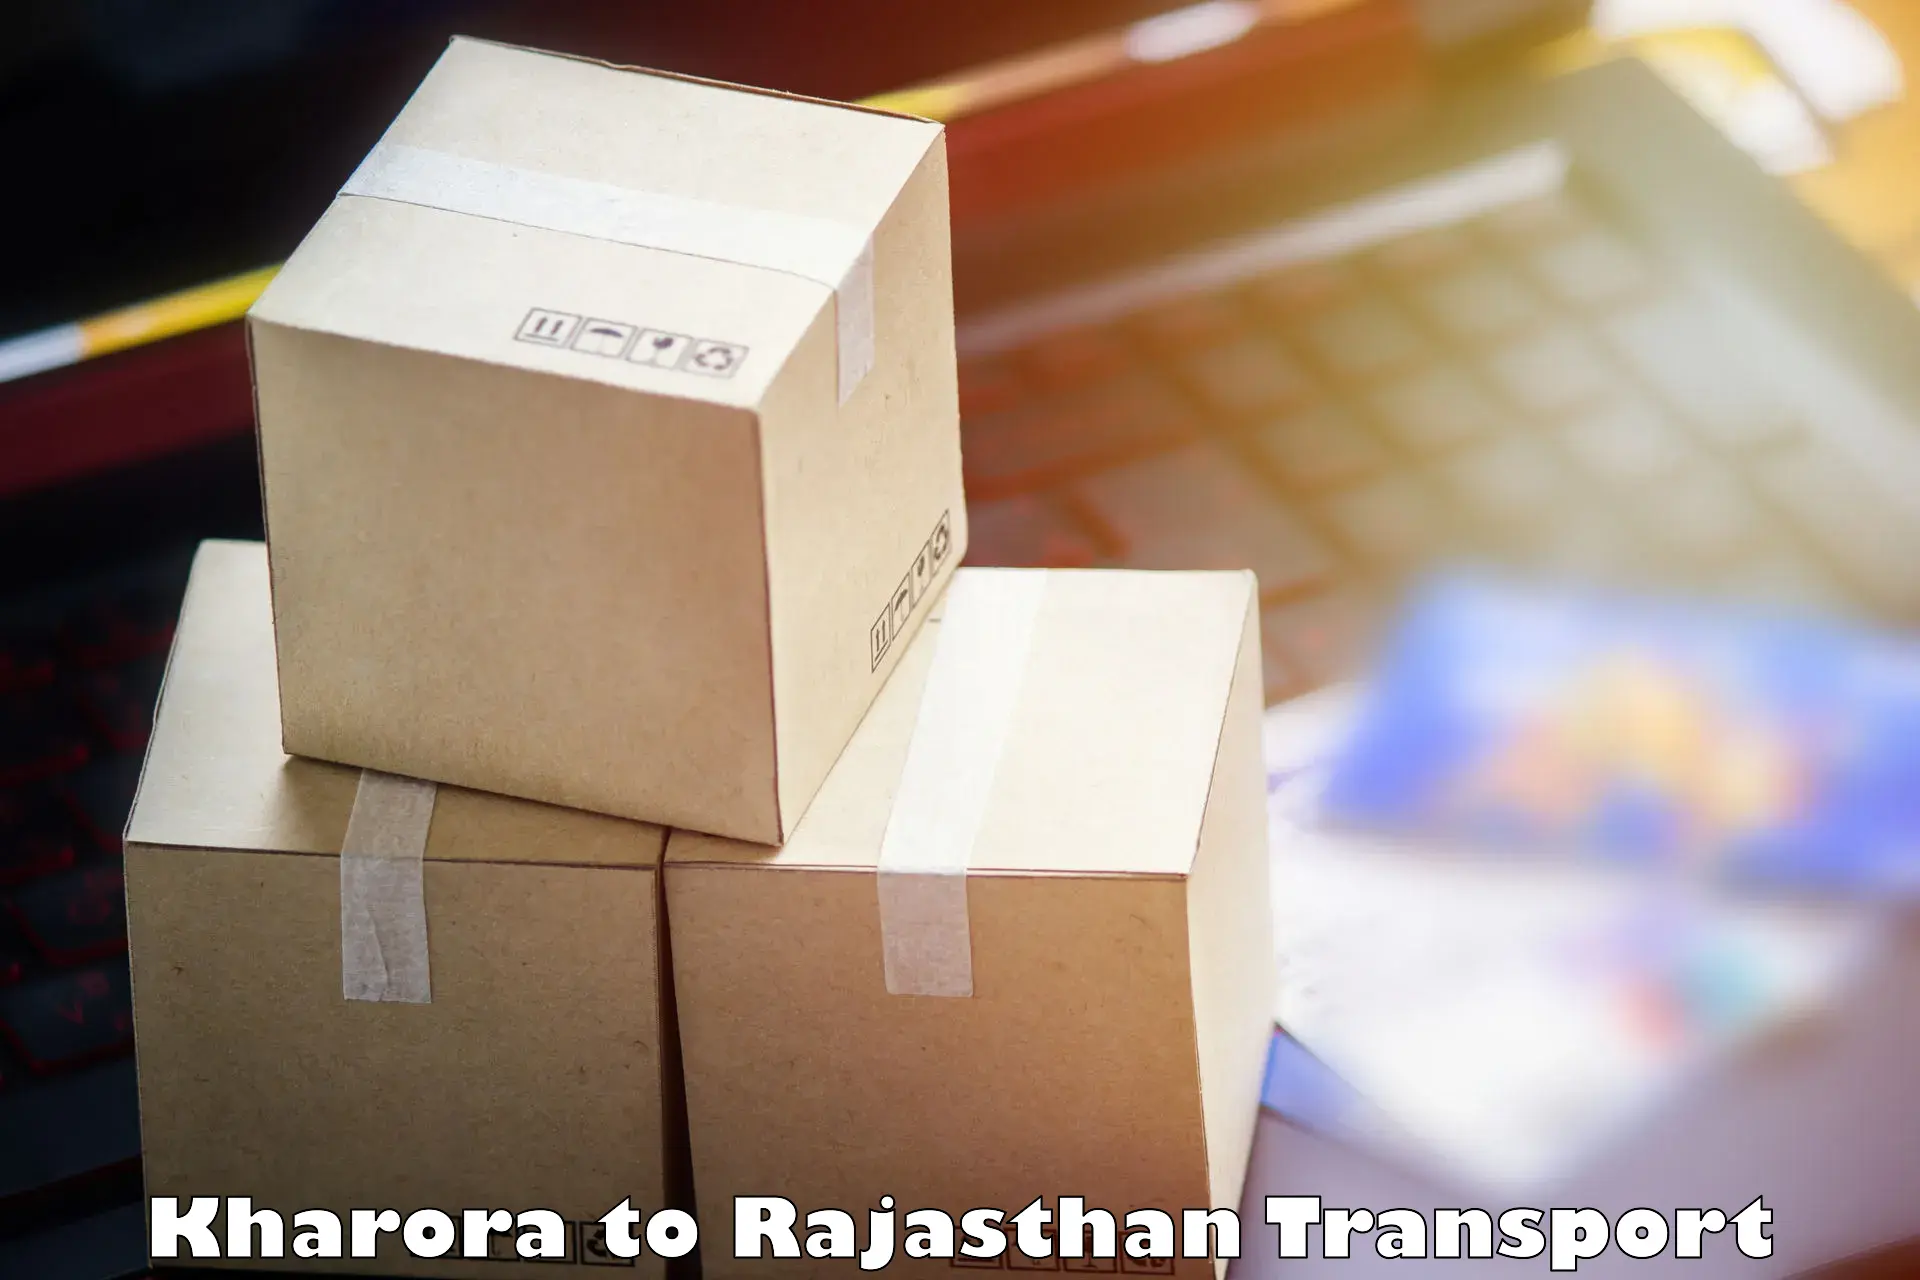 Parcel transport services in Kharora to Chittorgarh